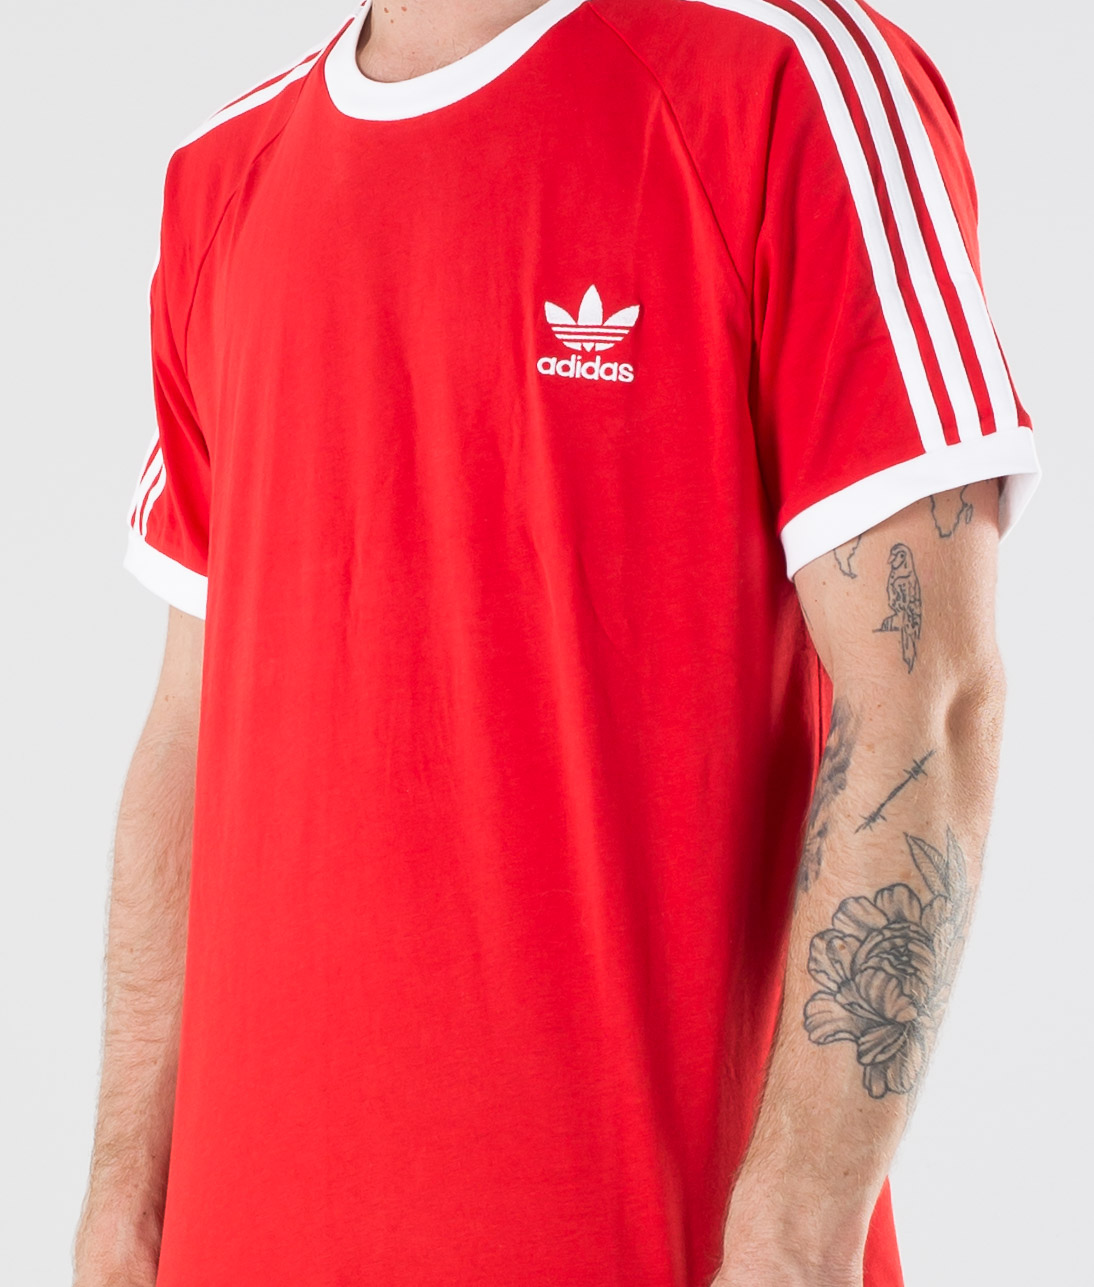 Adidas Originals 3-Stripes Tee T-shirt Lush Red - Ridestore.com